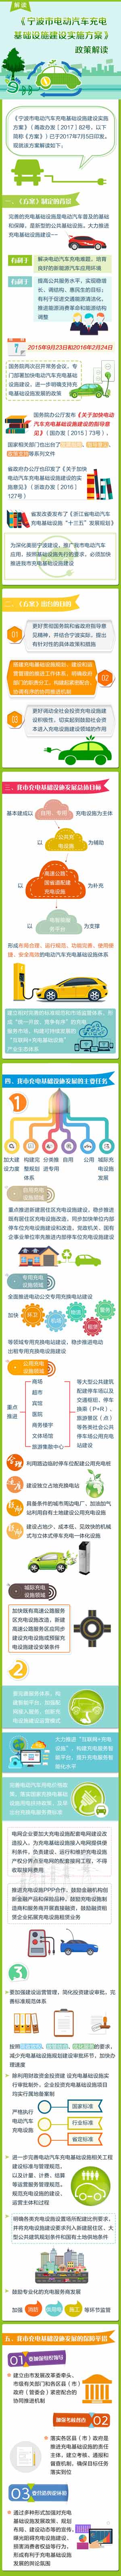 宁波出台电动汽车充电基础设施建设实施方案 2020年将建分散式充电桩41800个